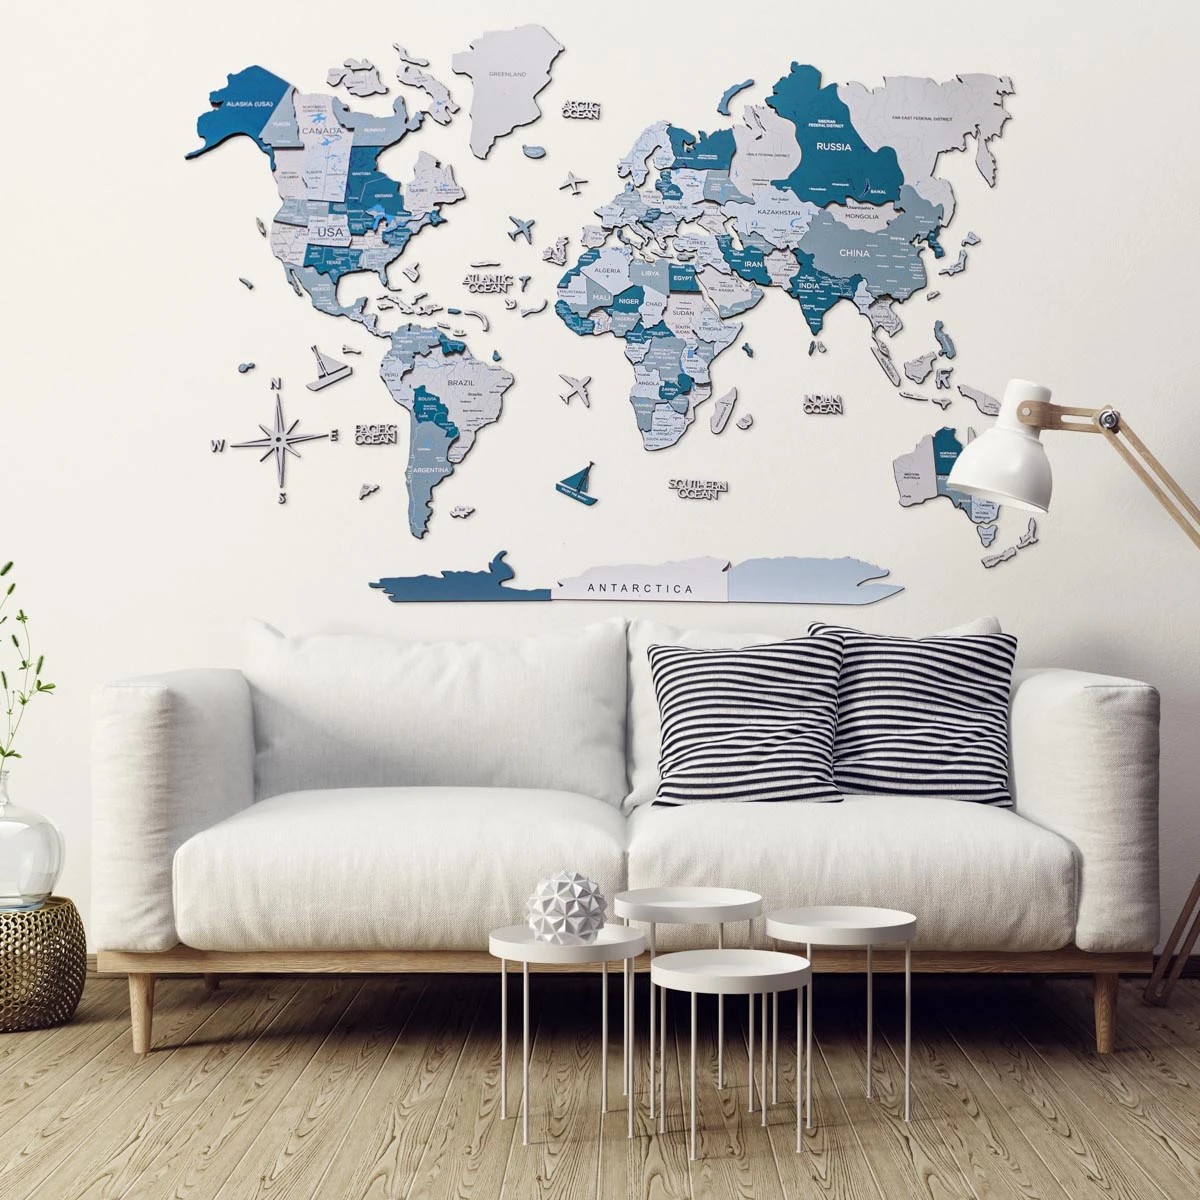 Velik lesen zemljevid sveta